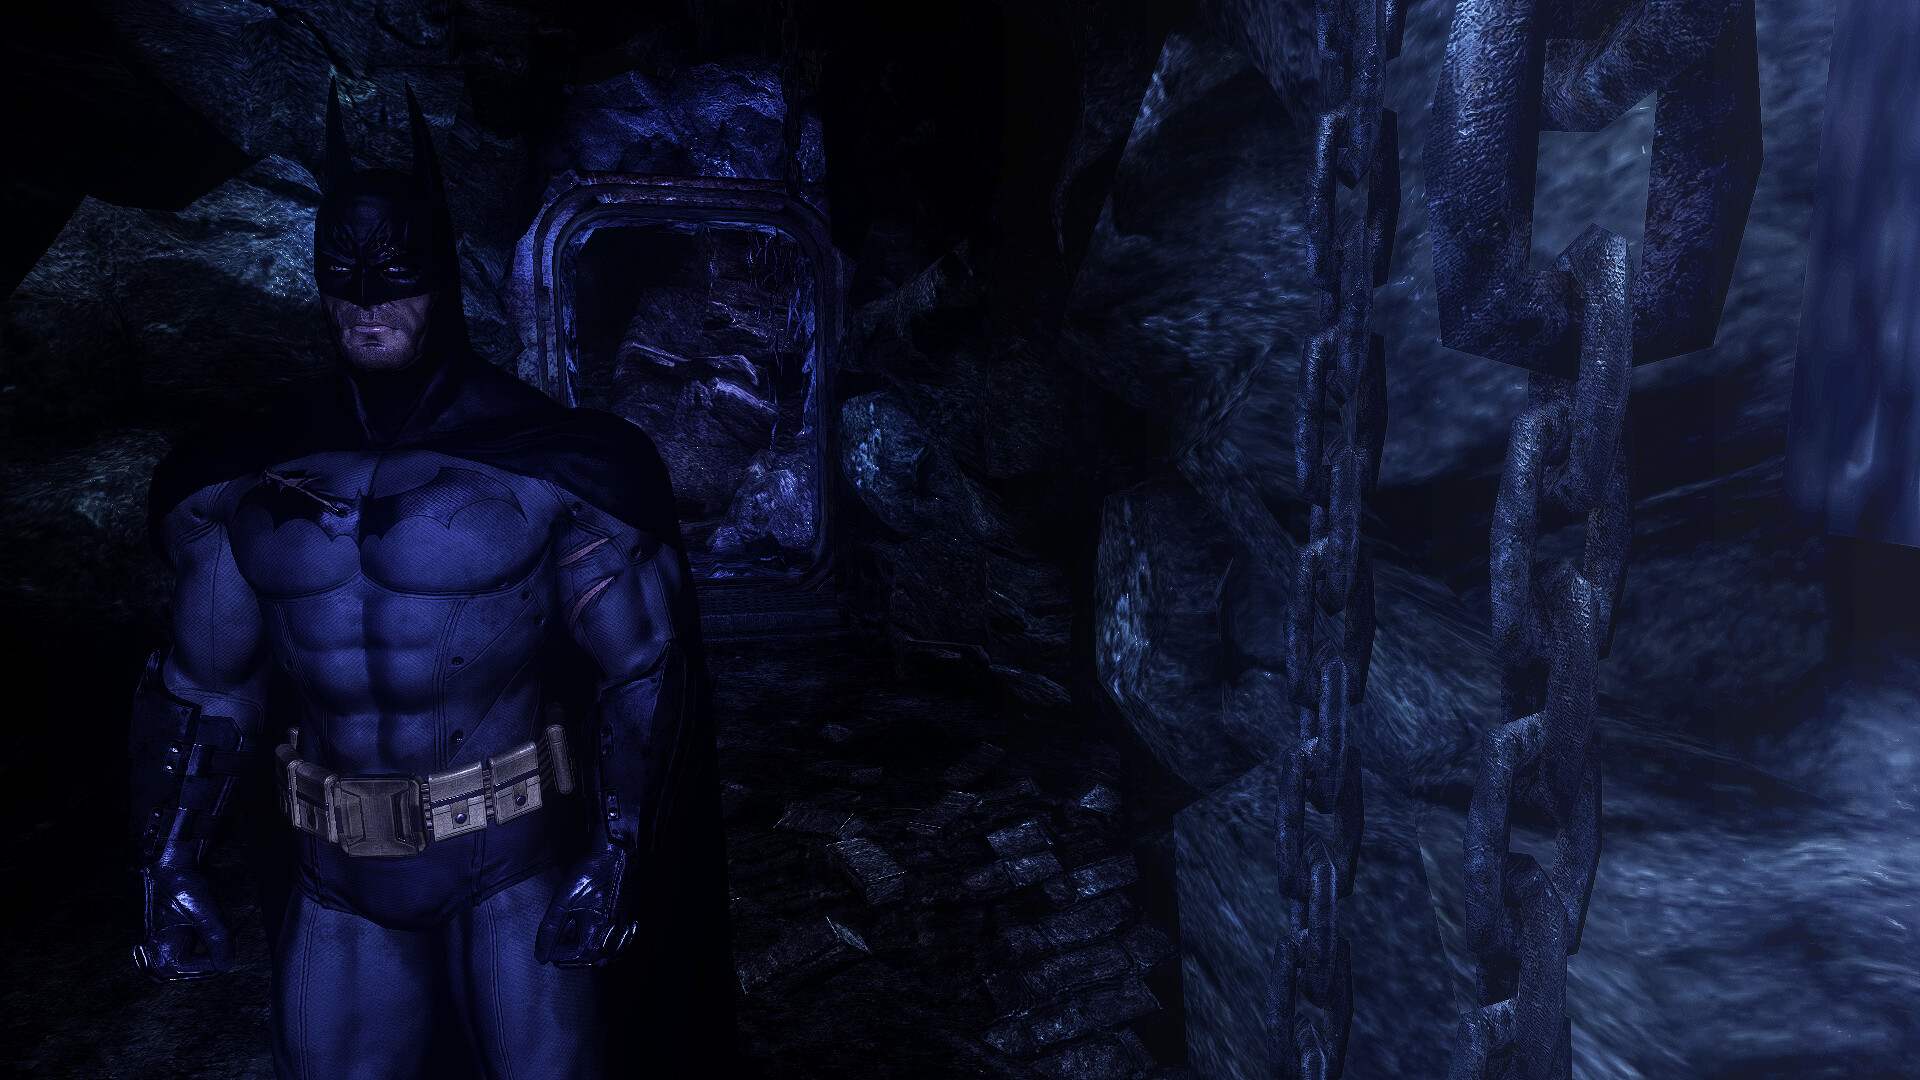 ArtStation - Batman Arkham Asylum - Lighting, FX, & Textures